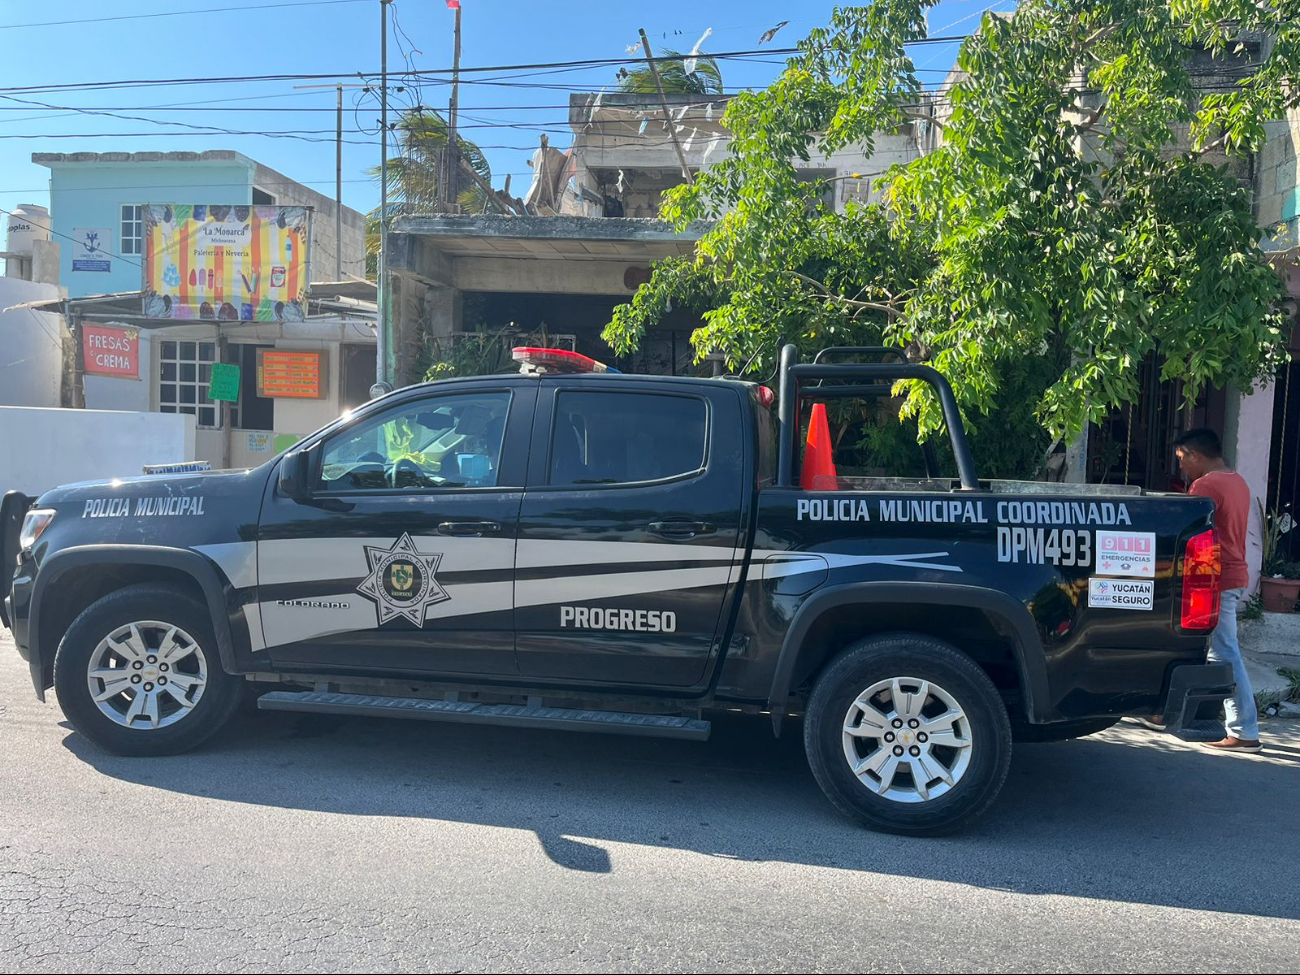 Oficiales de la policía municipal investigan los hechos en Progreso